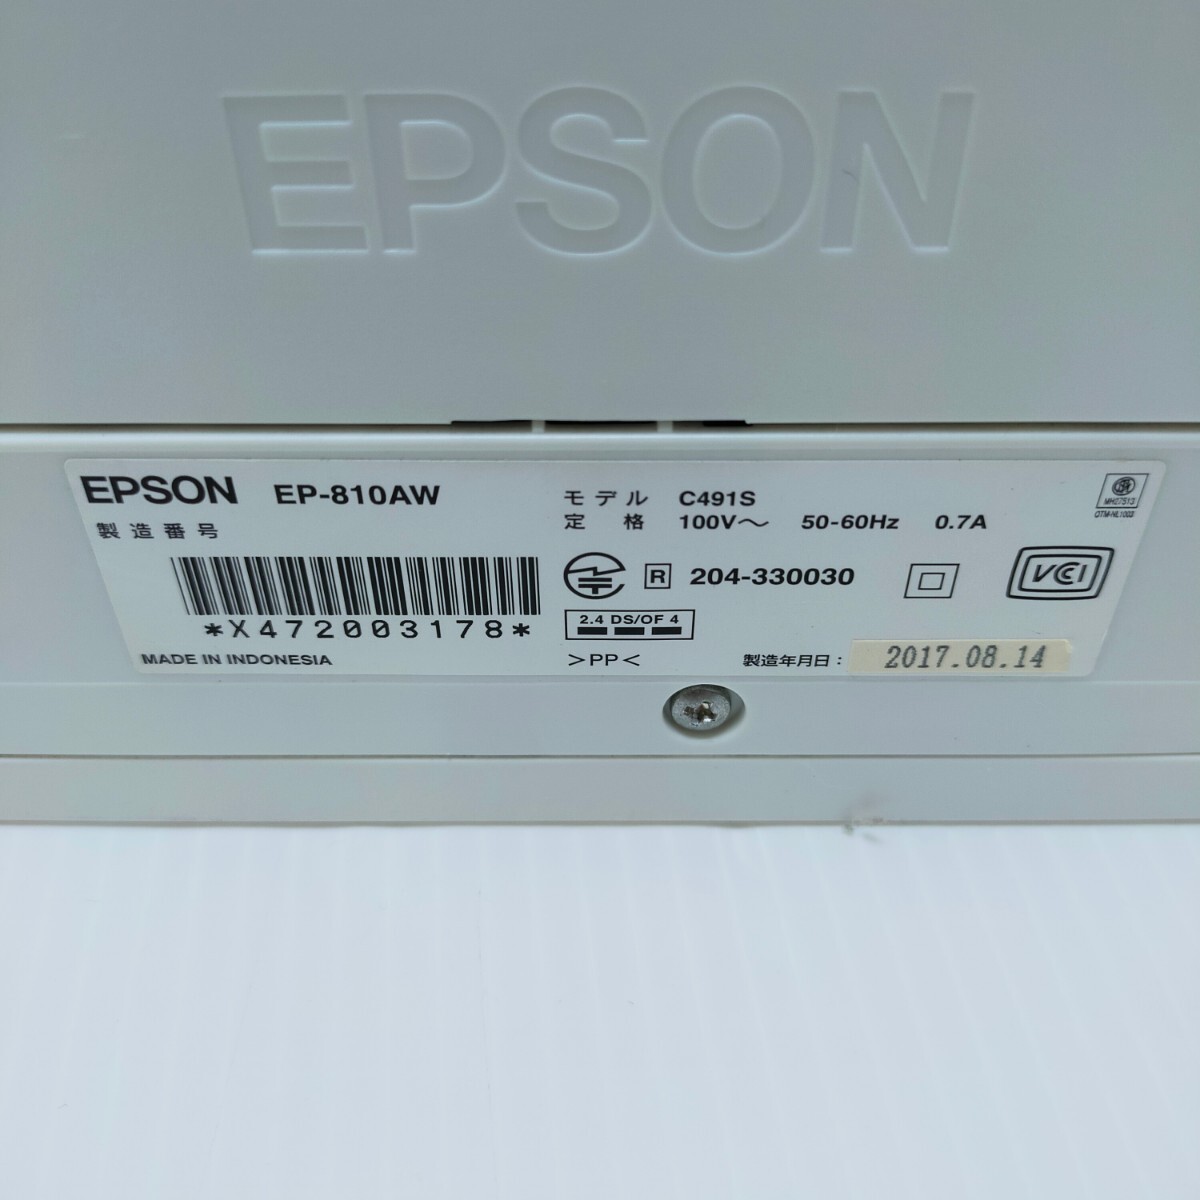 # возвращение денег гарантия есть #EPSON EP-810AW струйный принтер Epson 